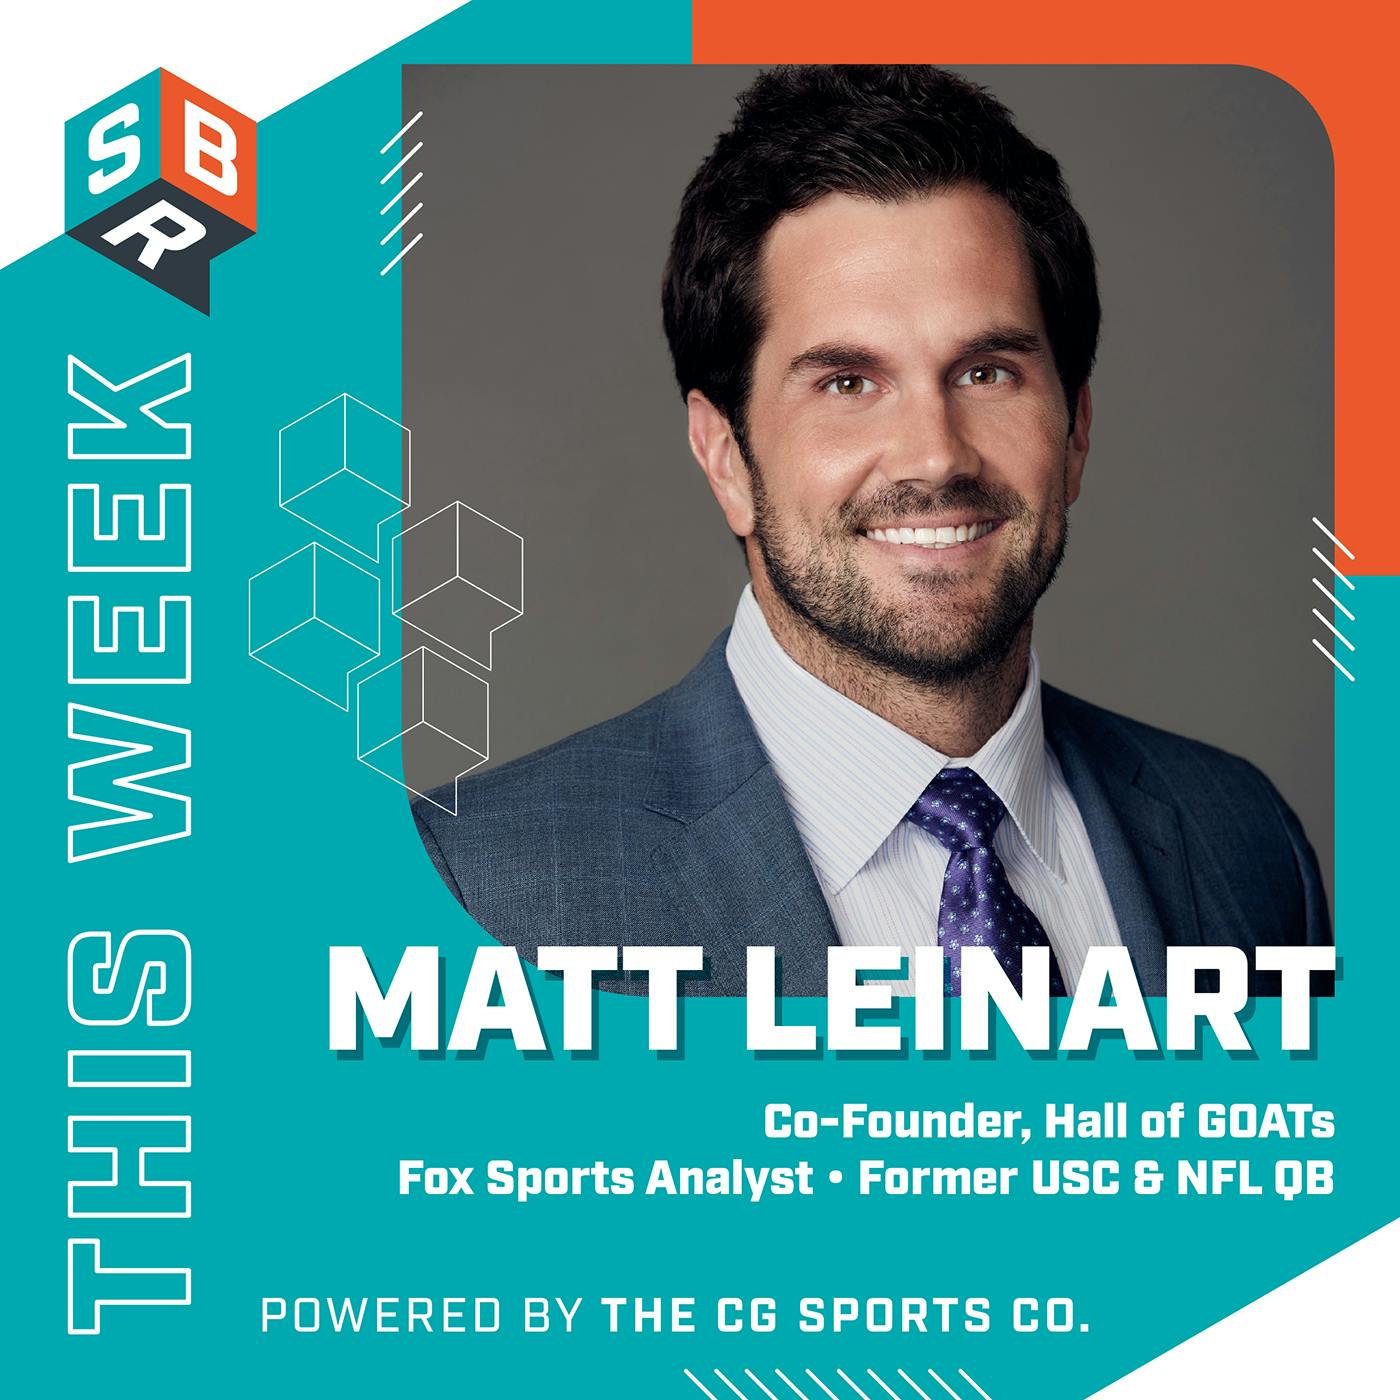 Matt Leinart (@MattLeinartQB), Co-Founder, Hall of GOATS, Fox Sports Analyst, 2004 Heisman Trophy winner